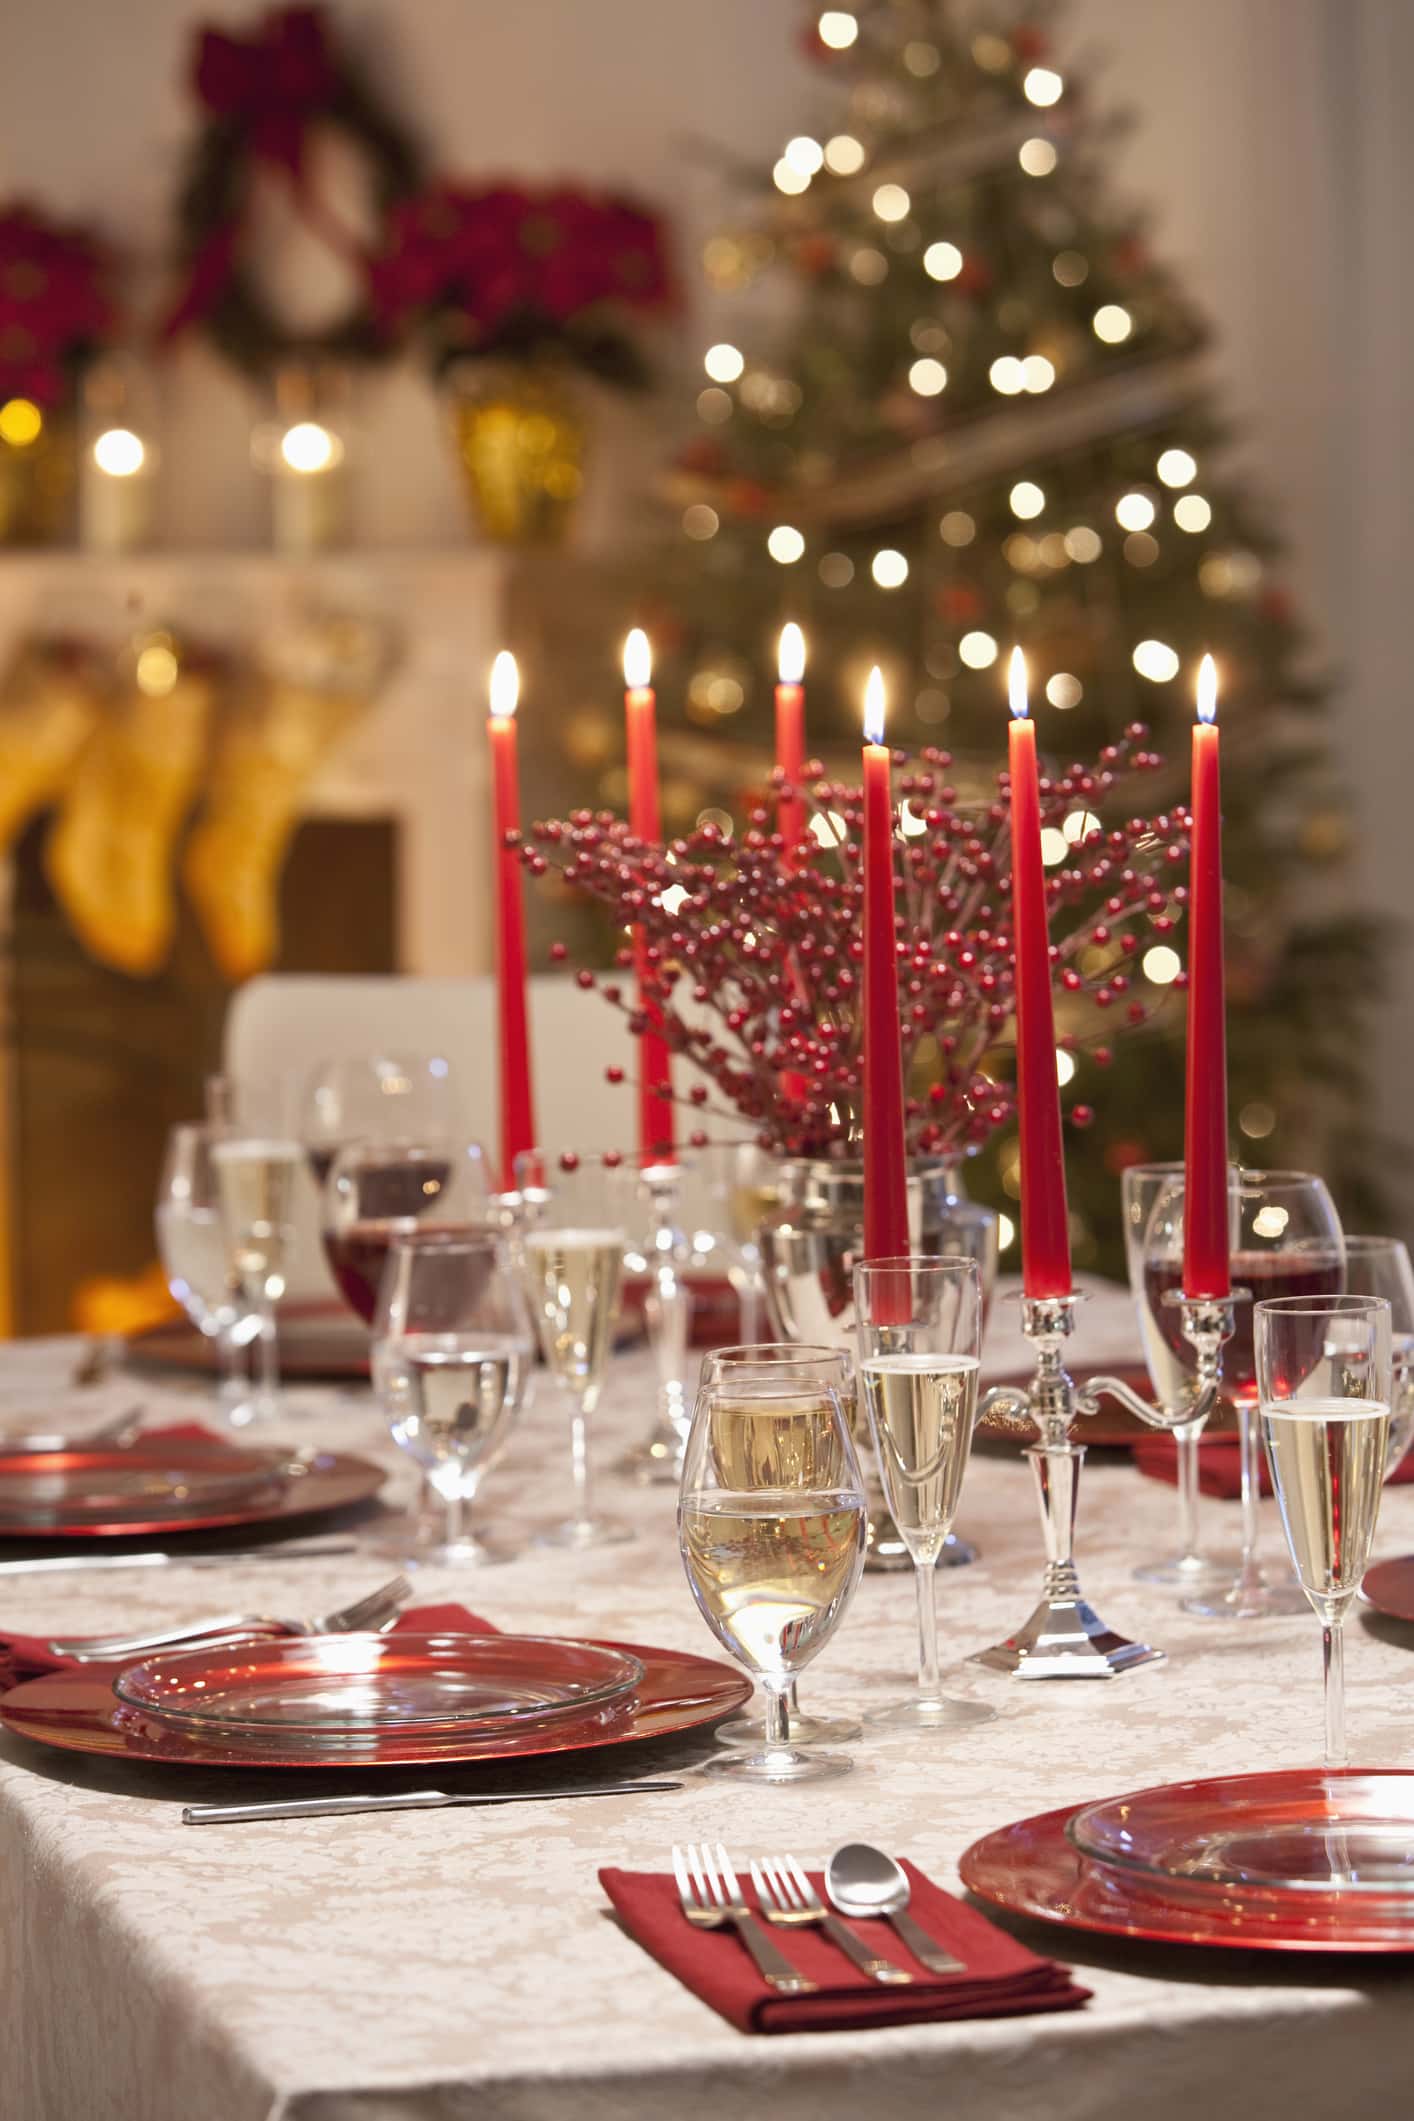 Table set for Christmas Dinner